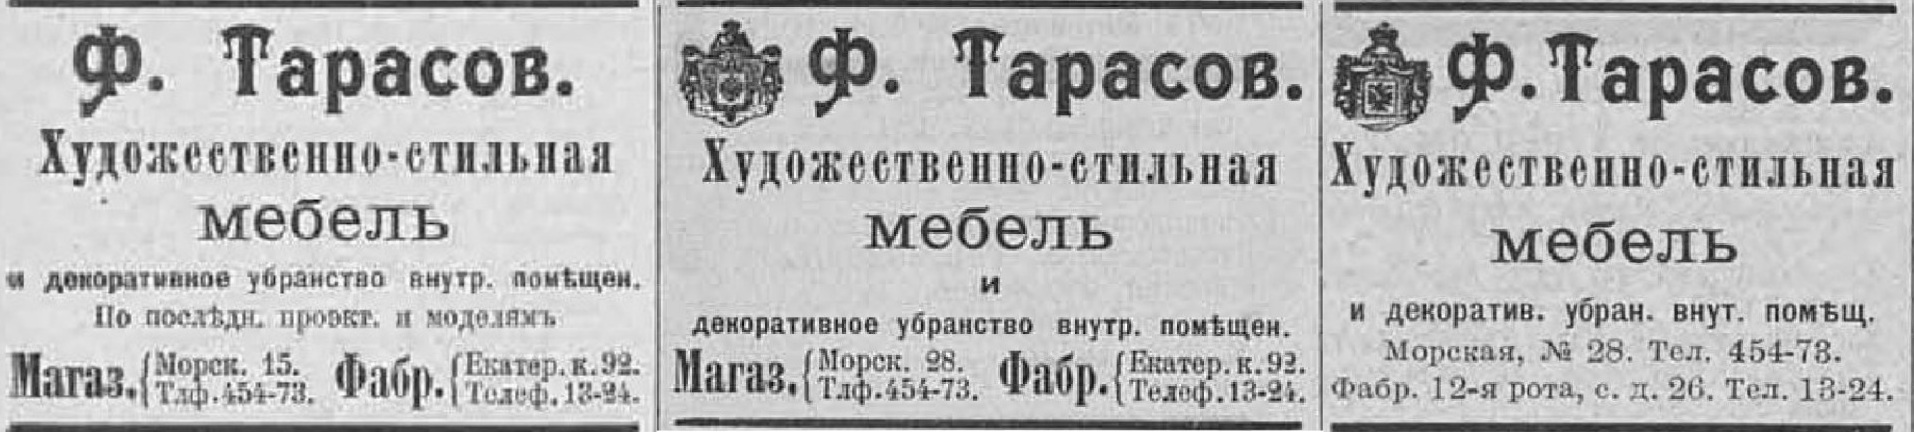 реклама фирмы Ф.Ф.Тарасова 1910, 1911, 1912гг. адреса и герб..jpg